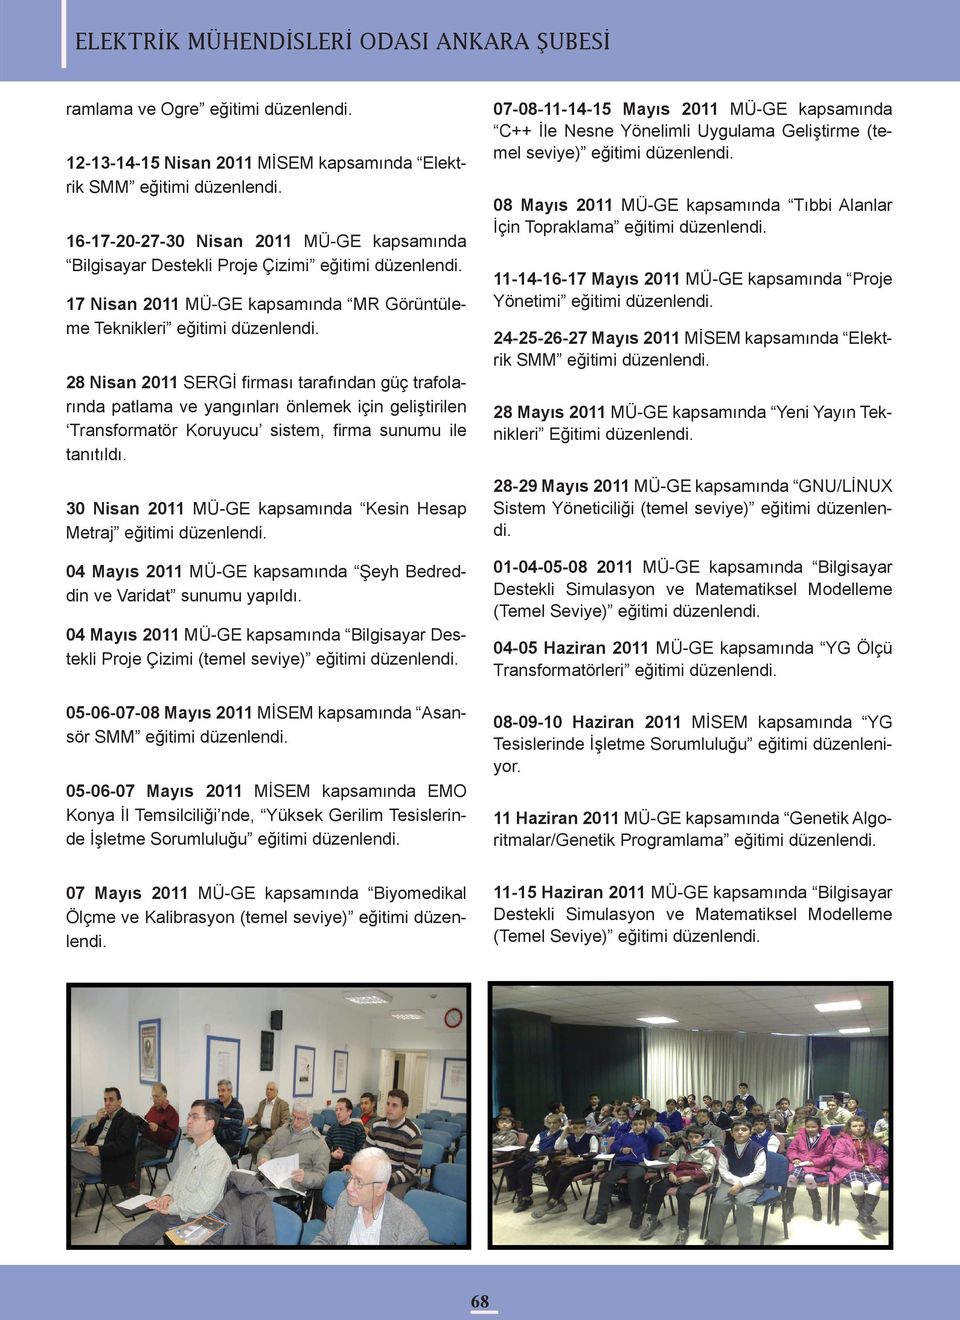 ile tanıtıldı. 30 Nisan 2011 MÜ-GE kapsamında Kesin Hesap Metraj 04 Mayıs 2011 MÜ-GE kapsamında Şeyh Bedreddin ve Varidat sunumu yapıldı.